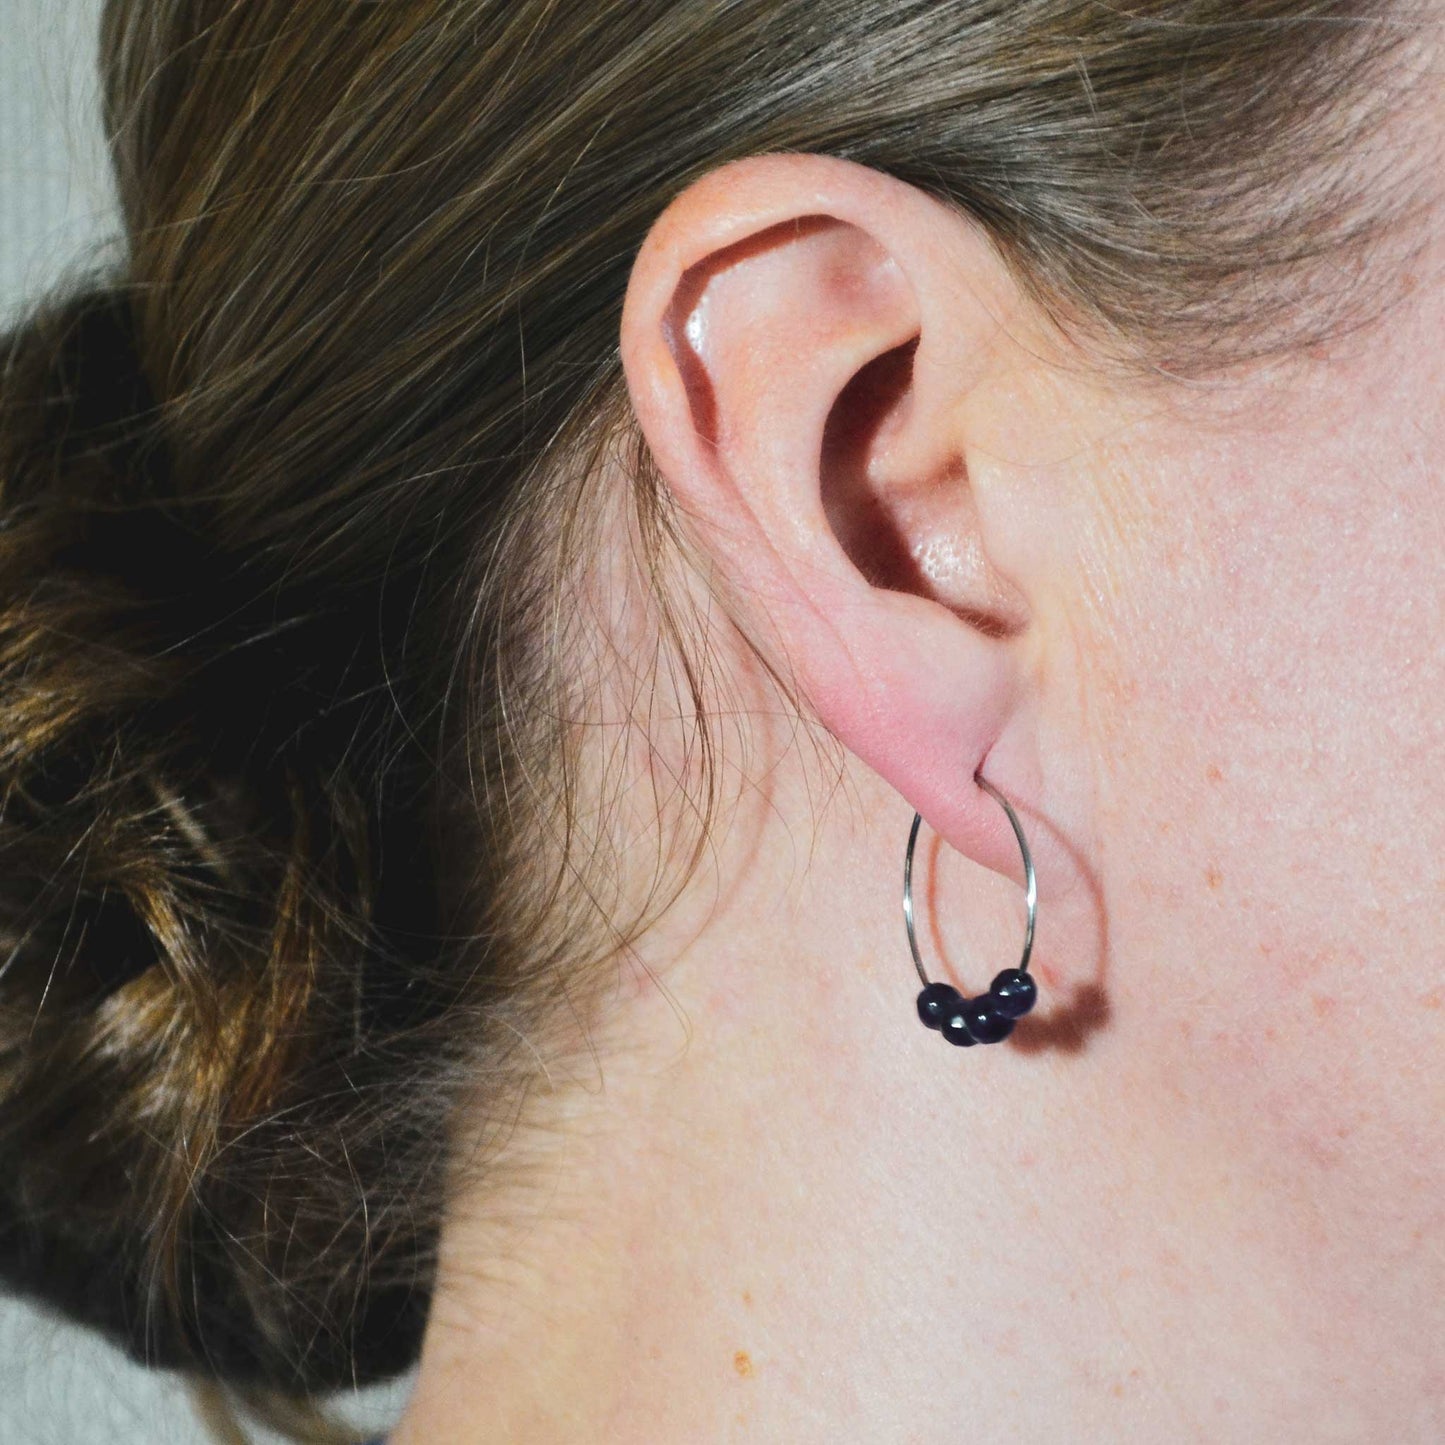 Woman wearing purple Amethyst hoop earring in earlobe